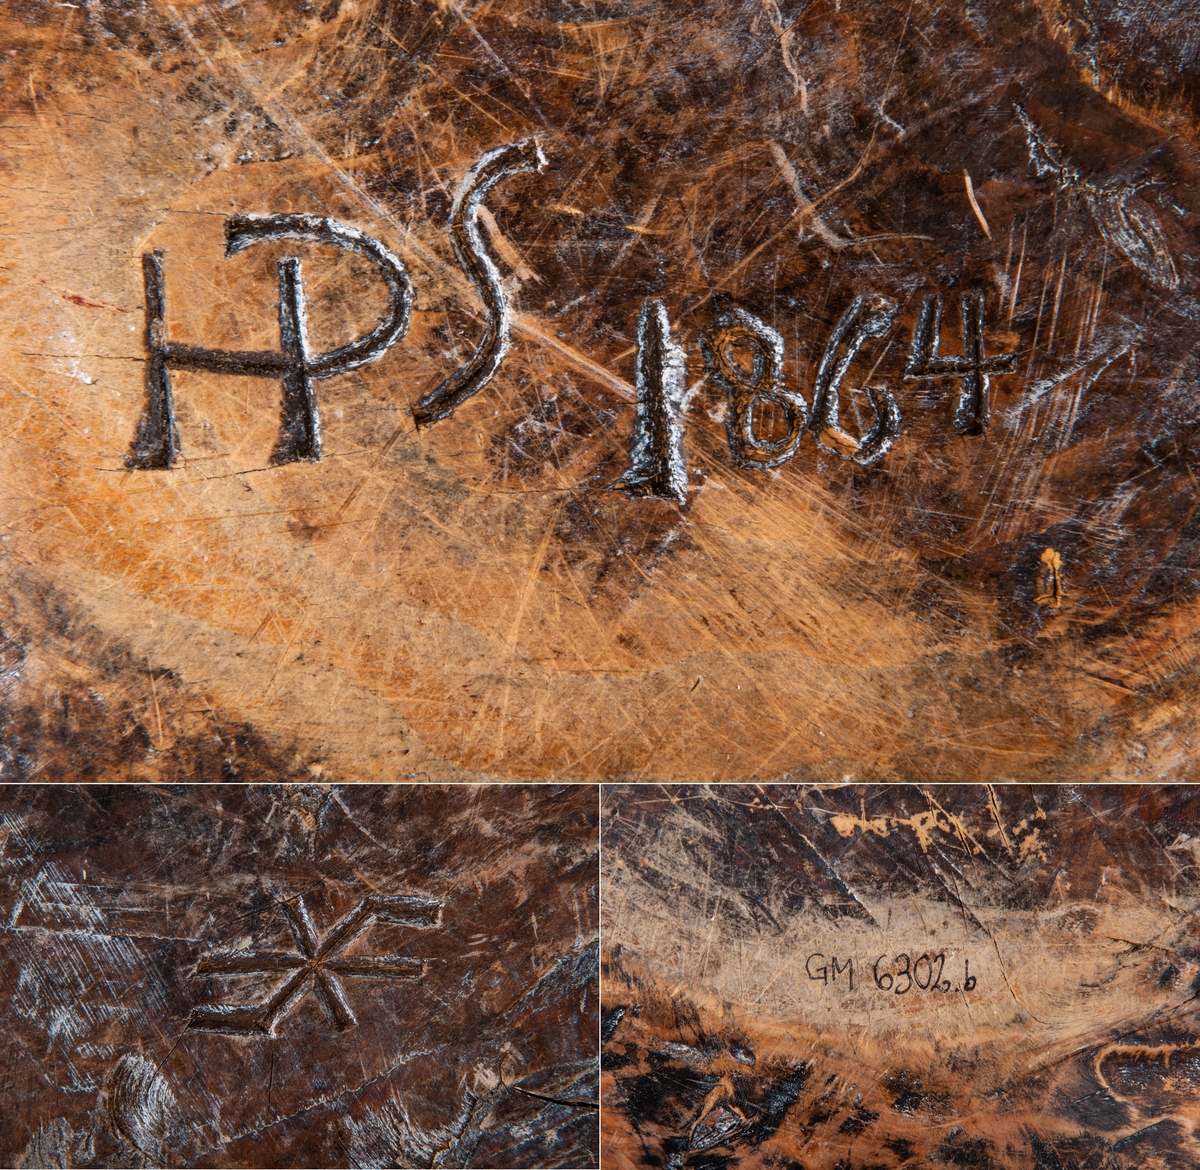 Träskål, vrilskål, snidad av utväxt från träd.
Av björk, urgröpt, naturvuxen, ojämnt trekantig till formen.
Undersidan märkt med karvsnitt: HPS 1864.